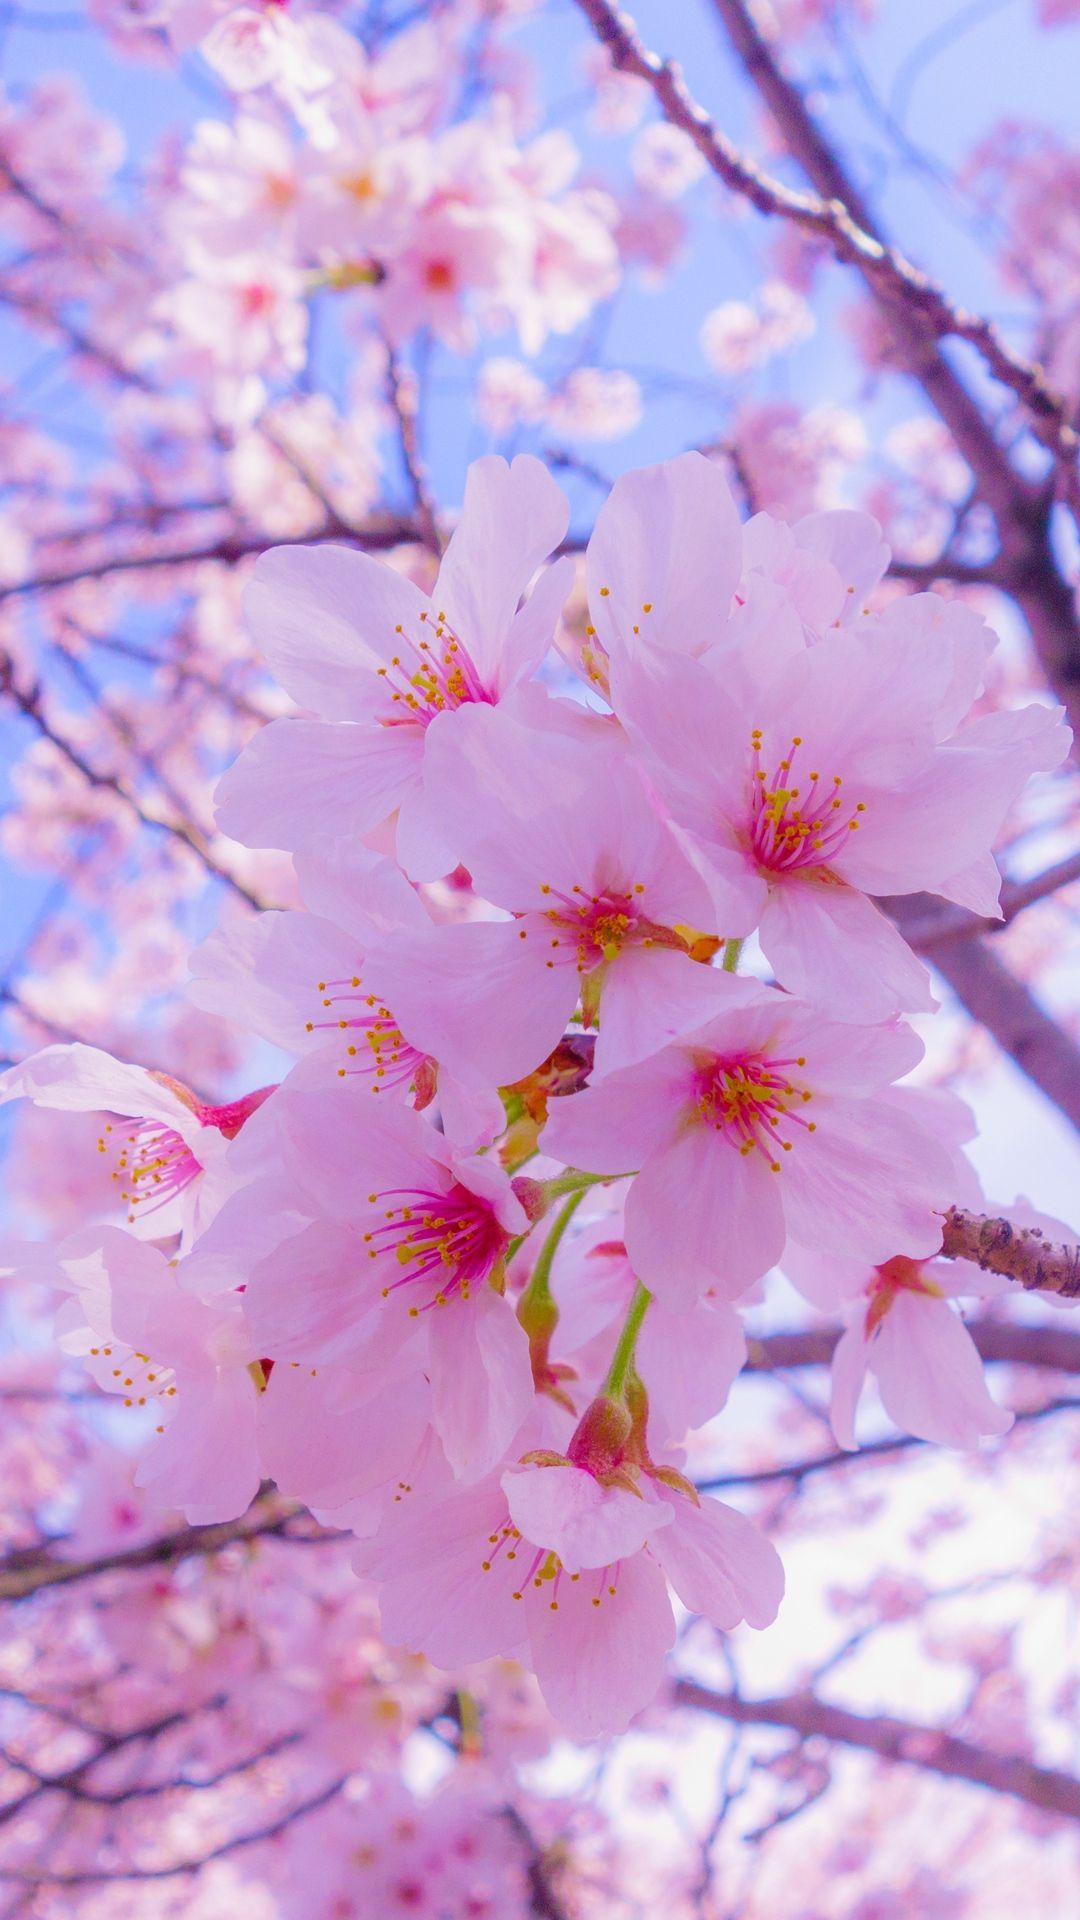 bloom flowers sakura Wallpaper. Cherry blossom